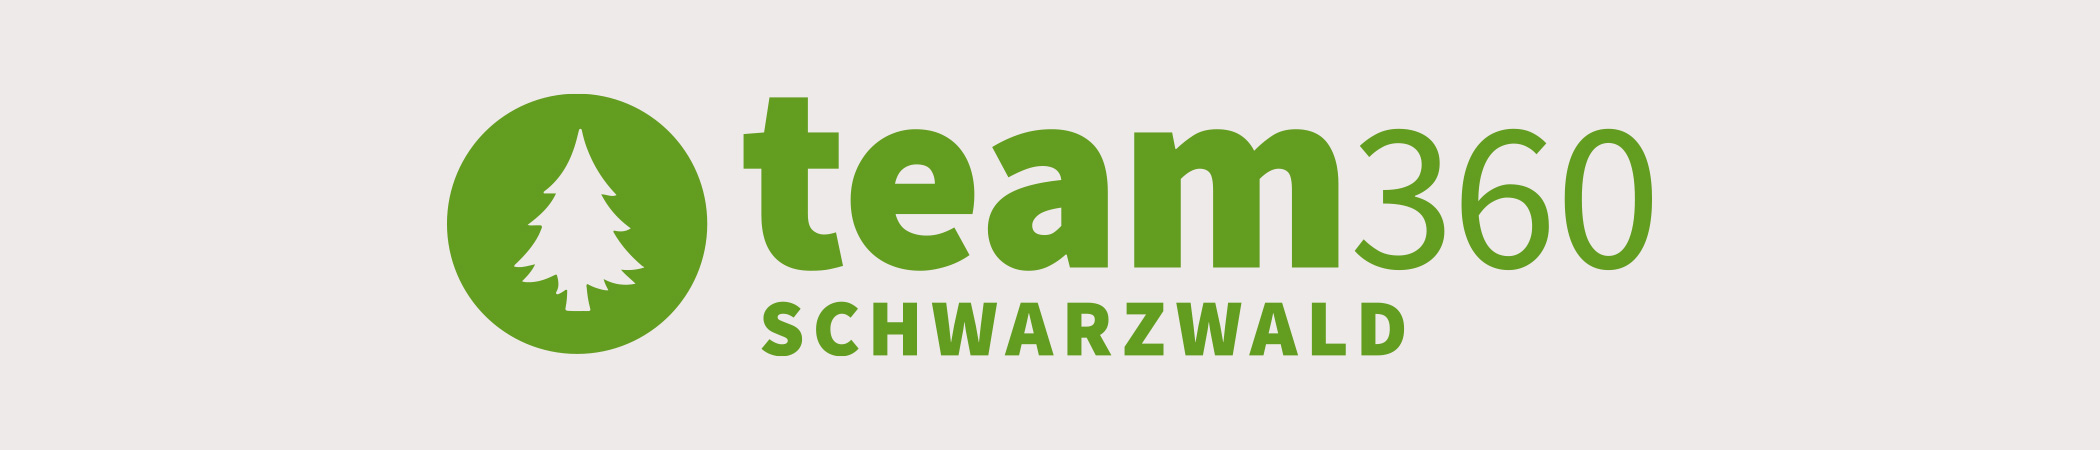 Team Schwarzwald | 360 Grad Rundgänge in Baden Württemberg